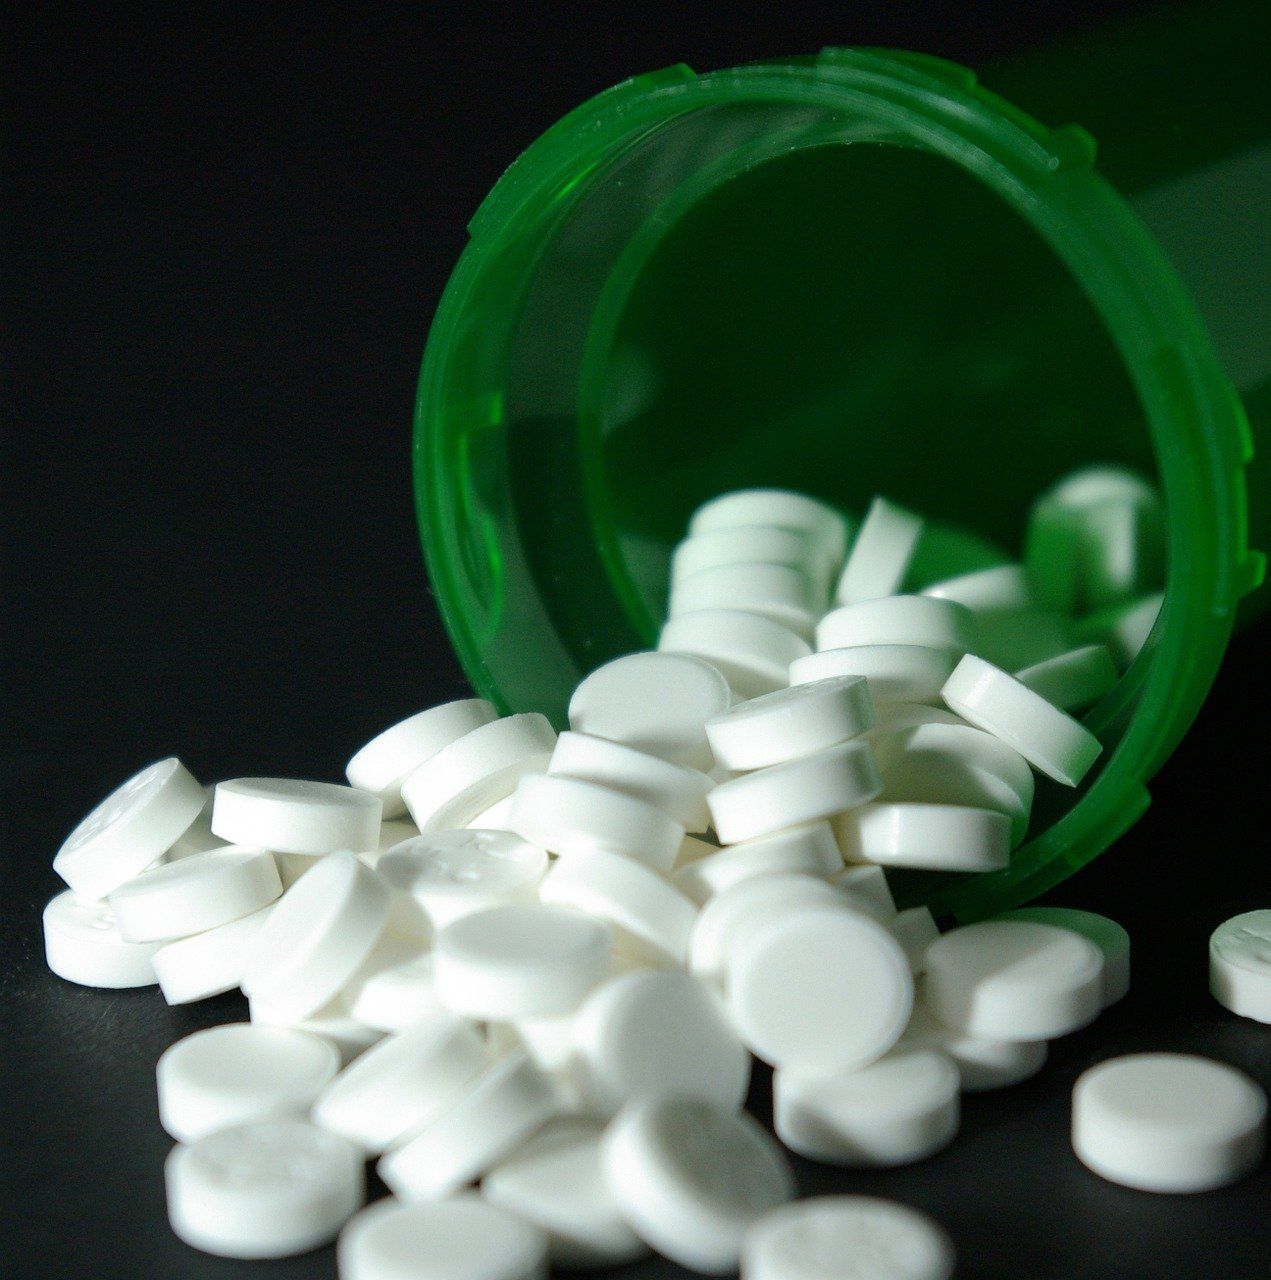 EMA aliniază recomandările pentru sartani la cele pentru alte medicamente